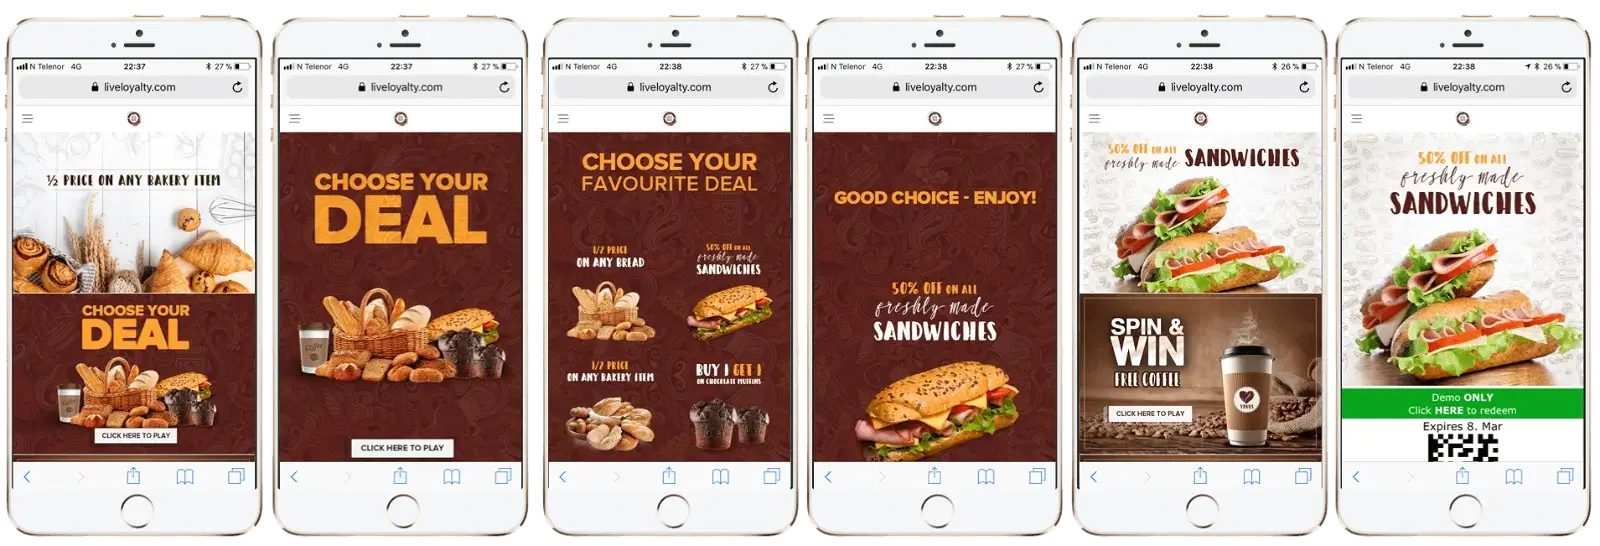 choose your deal sandwich option 